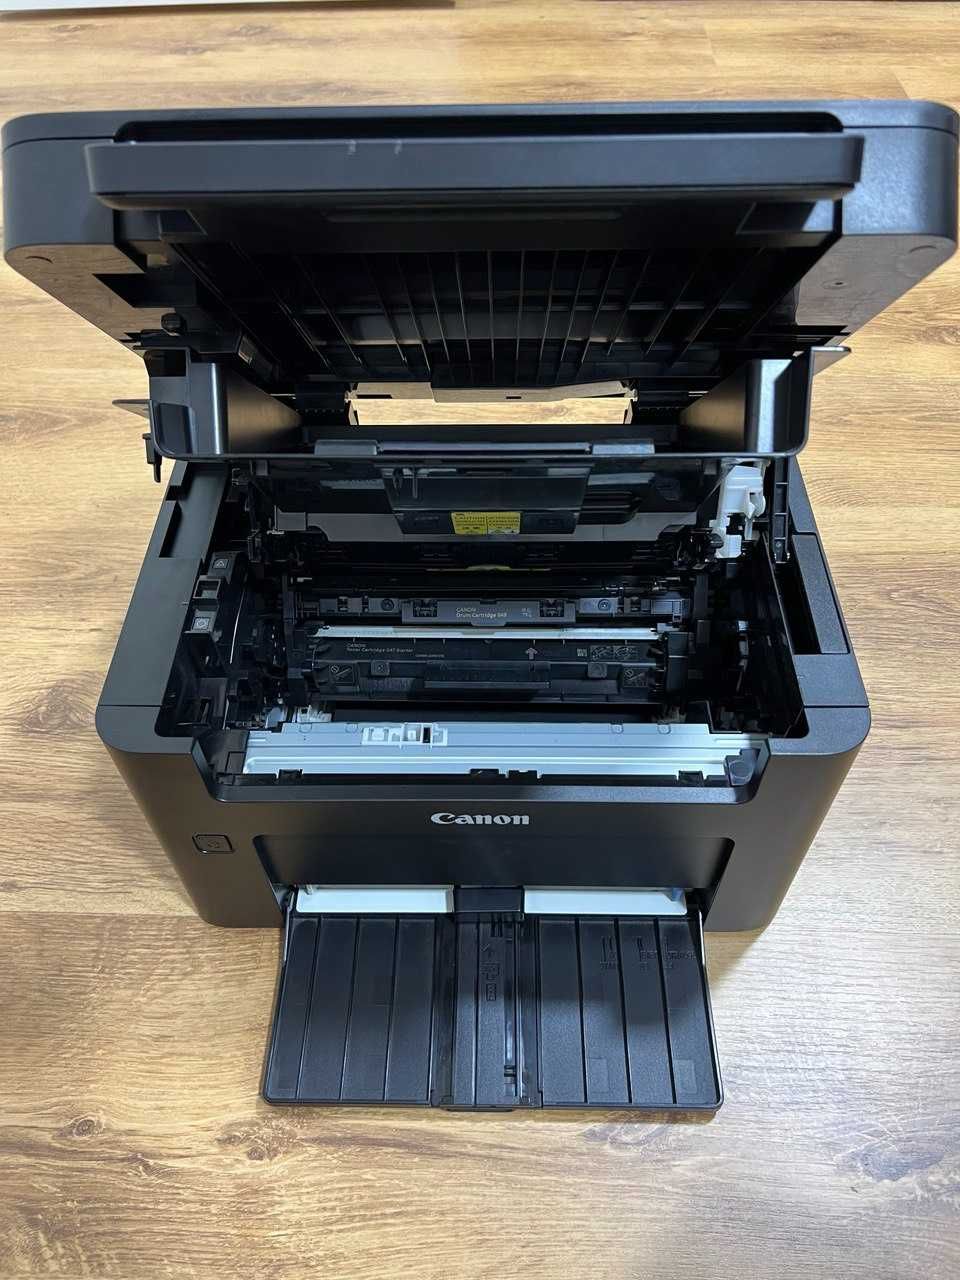 Printer "Canon-MF112" sotiladi